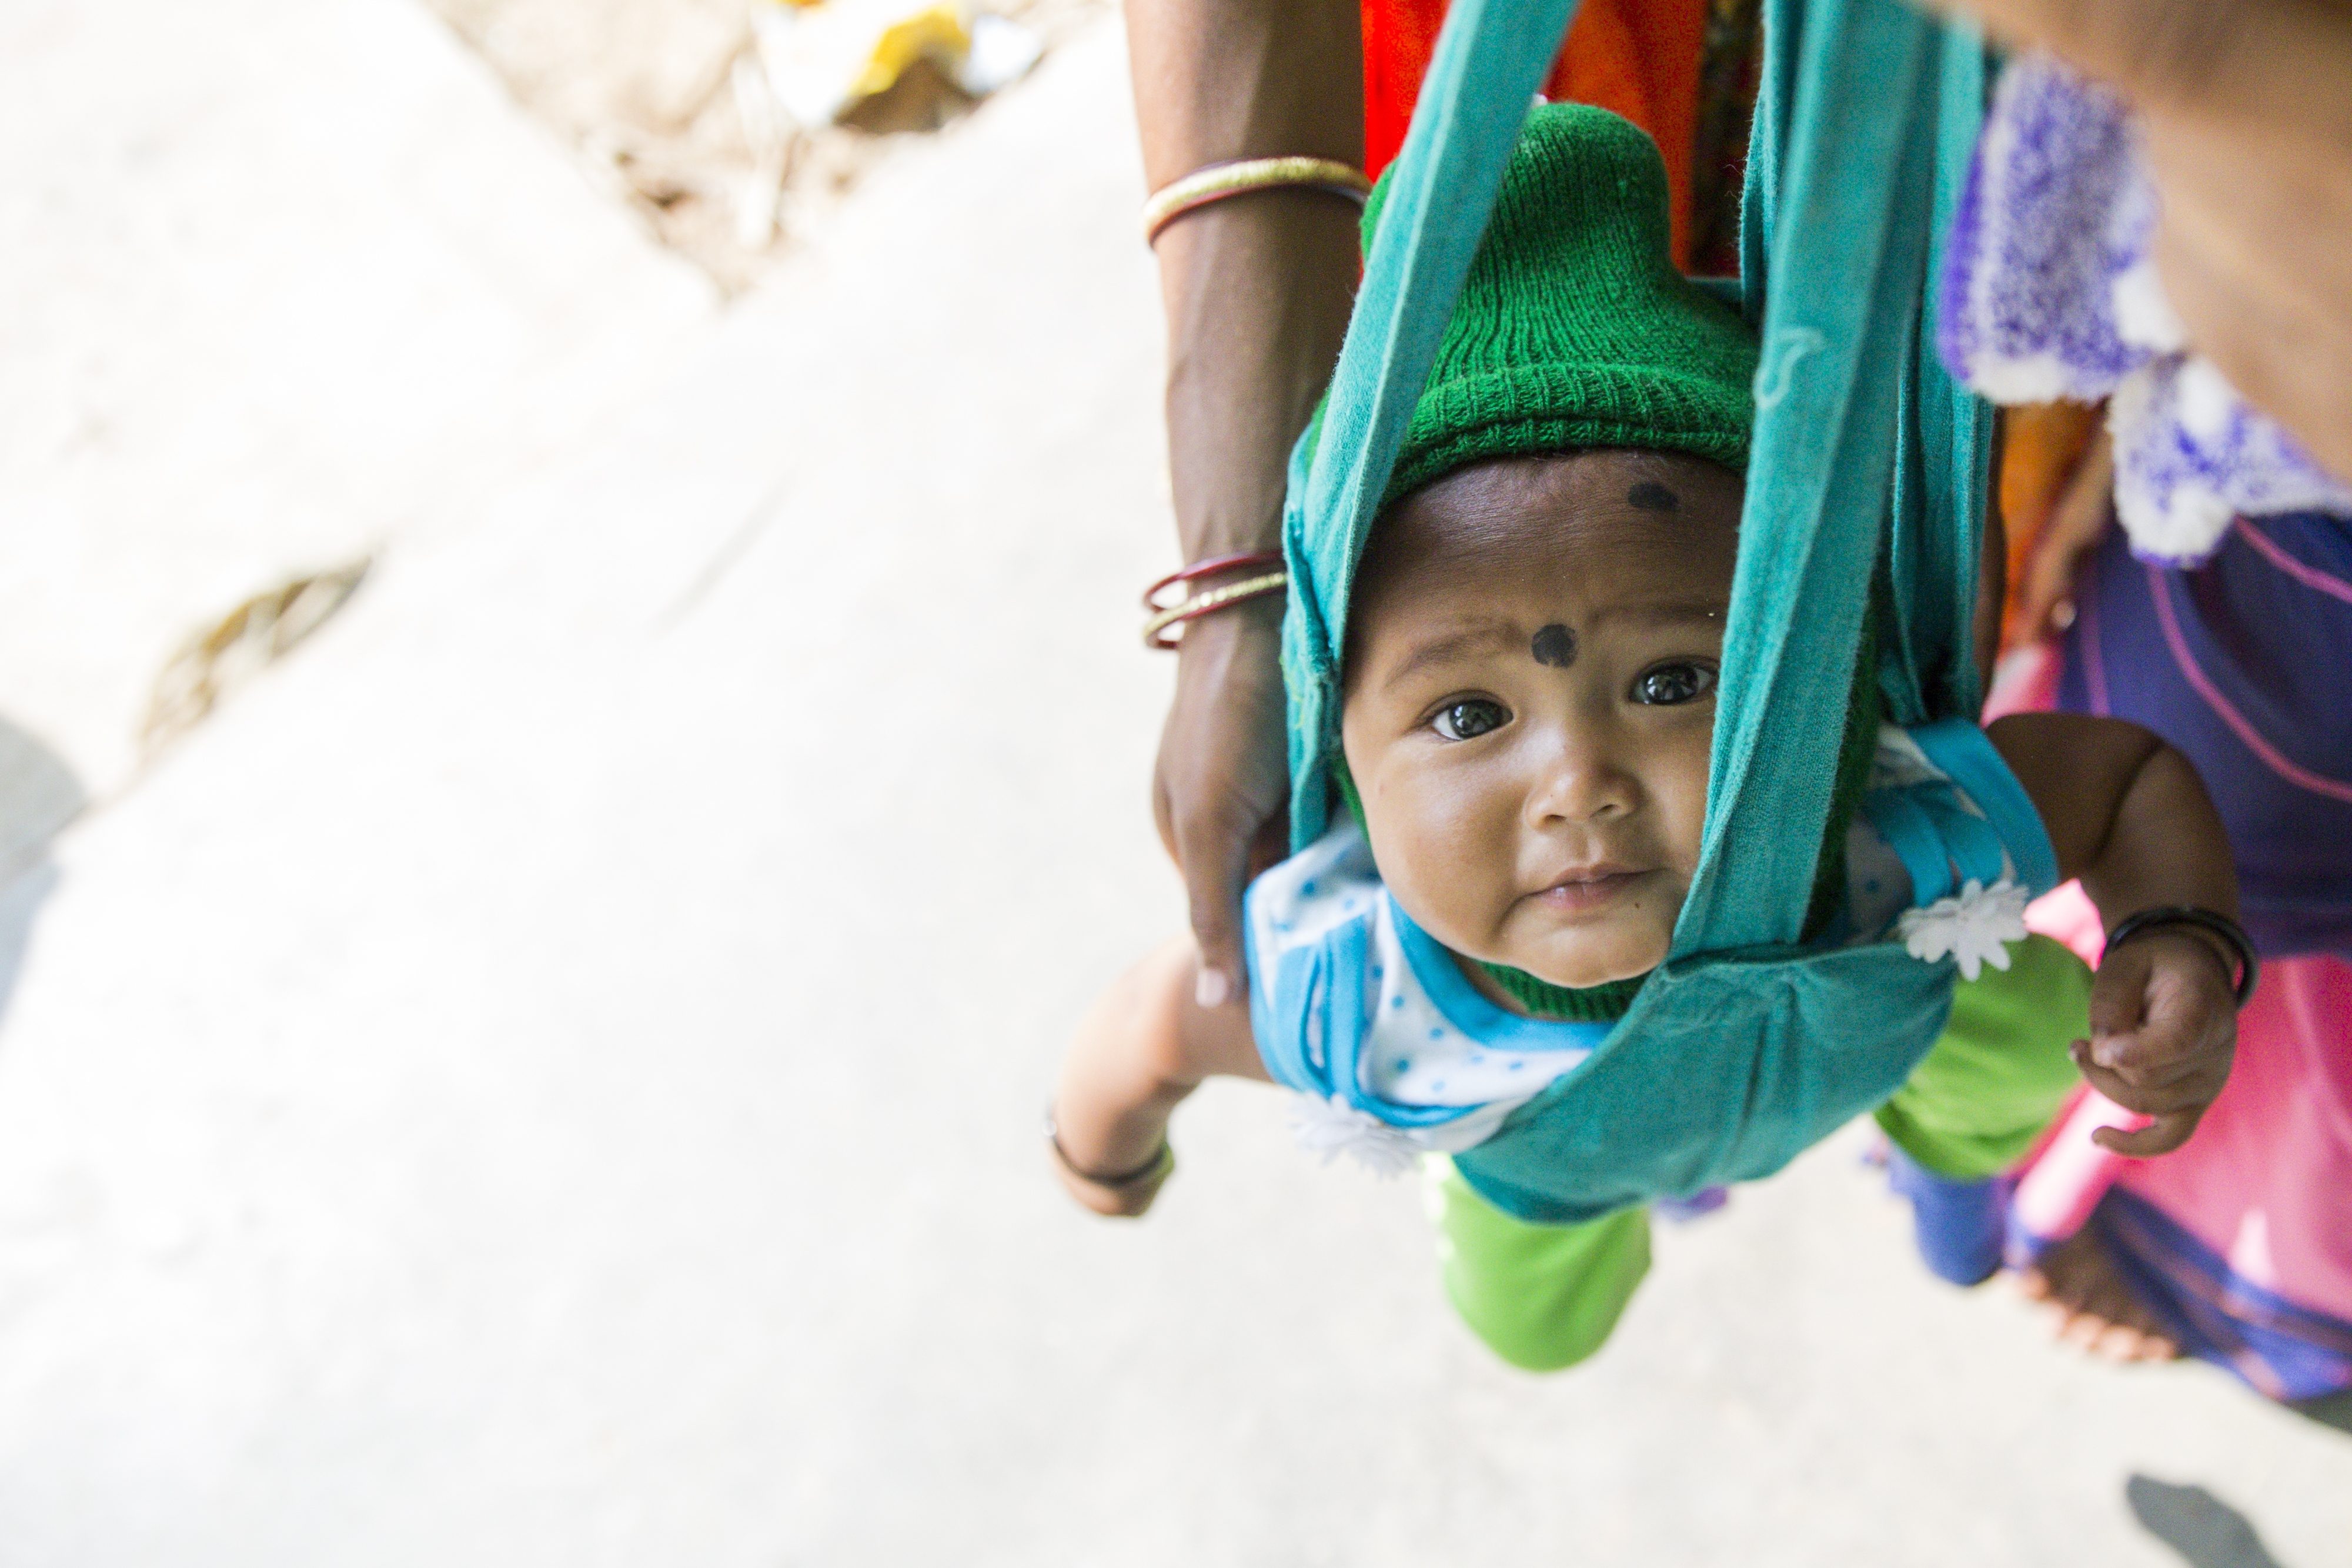 Jenter og gutter har vilt forskjellige sjanser for å overleve basert på hvor de er født. 26 prosent av alle barn under fem år som mistet livet i 2021 bodde i Sør-Asia. Her blir en baby veid ved Anganwadi barnesenteret i landsbyen Gandhigram, som ligger i delstaten Jharkhand i India. Foto: UNICEF India/Prashanth Vishwanathan.